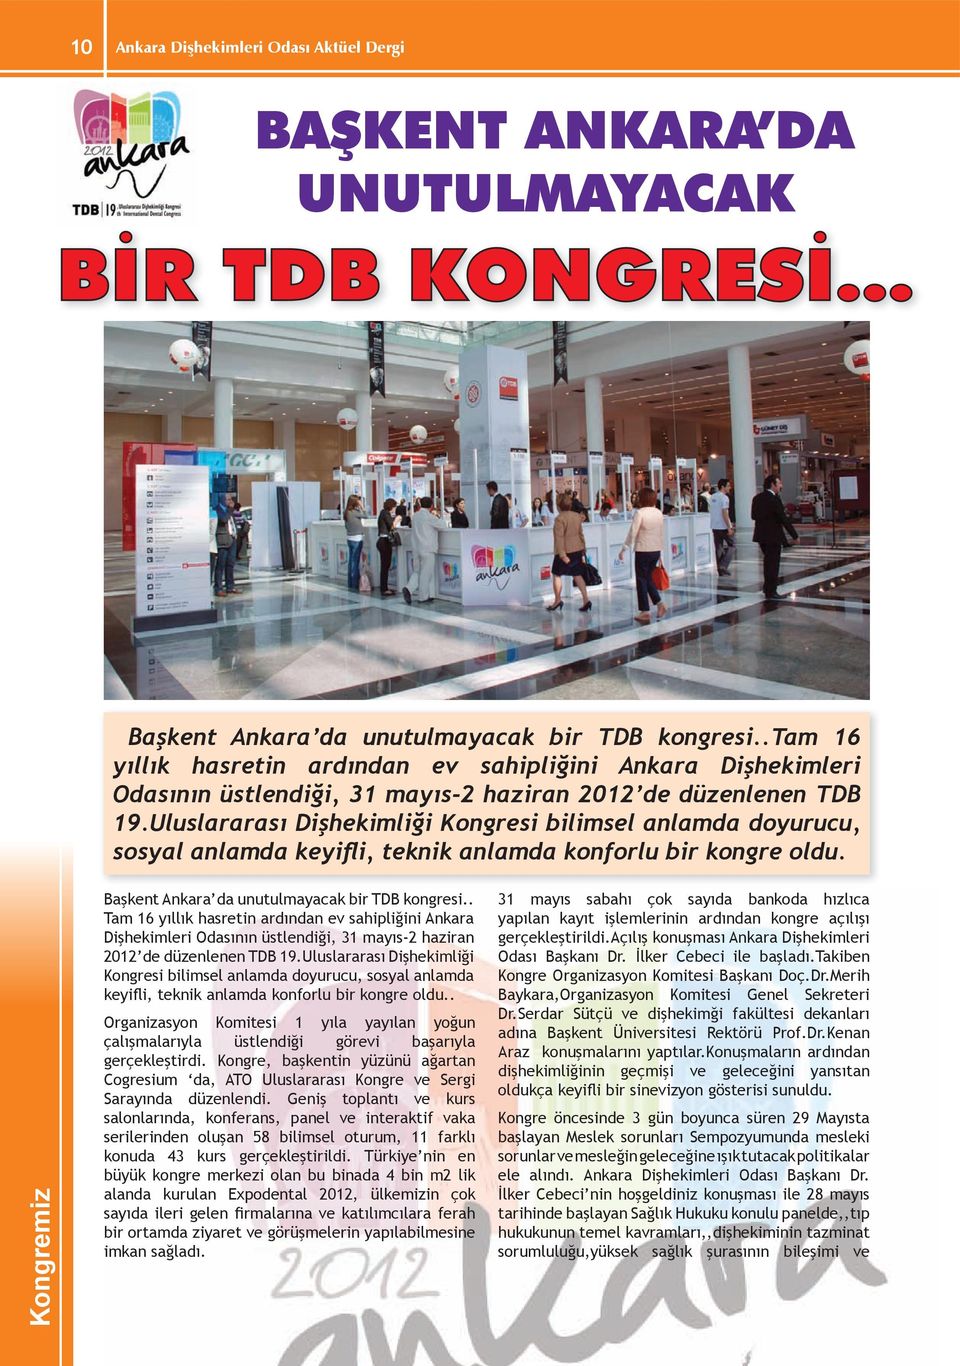 Uluslararası Dişhekimliği Kongresi bilimsel anlamda doyurucu, sosyal anlamda keyifli, teknik anlamda konforlu bir kongre oldu. Kongremiz Başkent Ankara da unutulmayacak bir TDB kongresi.